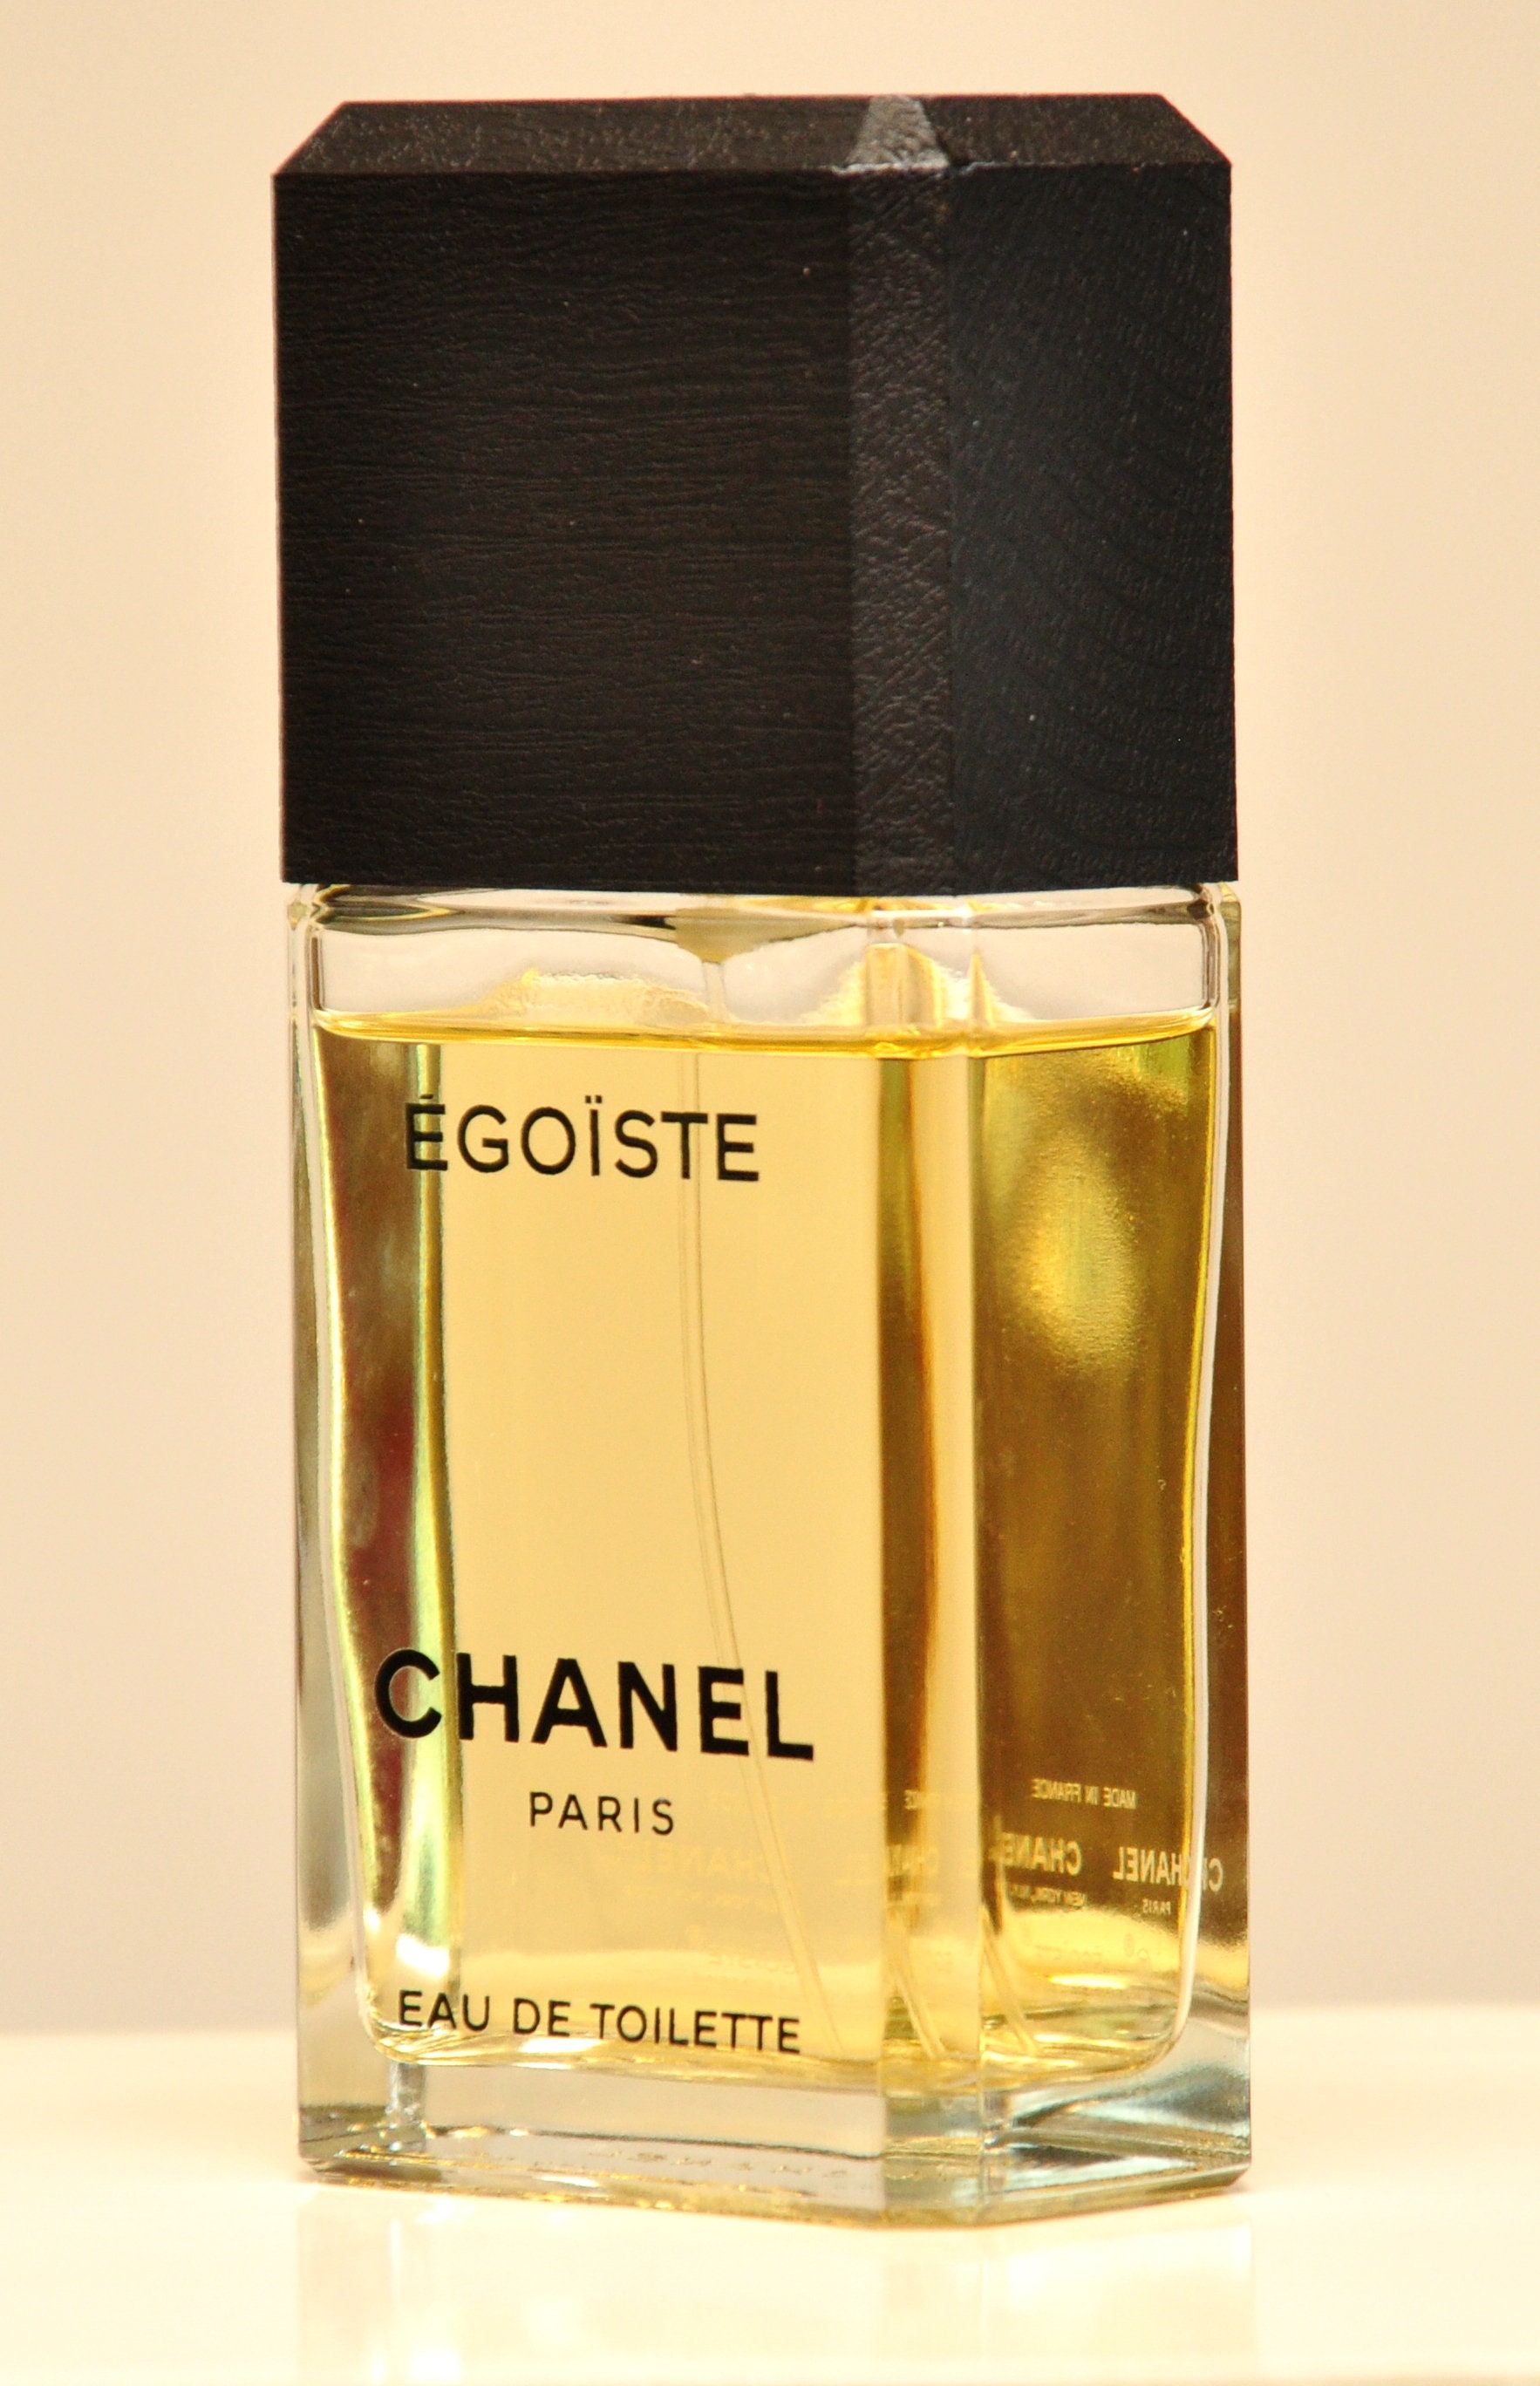 Chanel Egoiste Cologne CONCENTREE Very Rare for Sale in Mankato